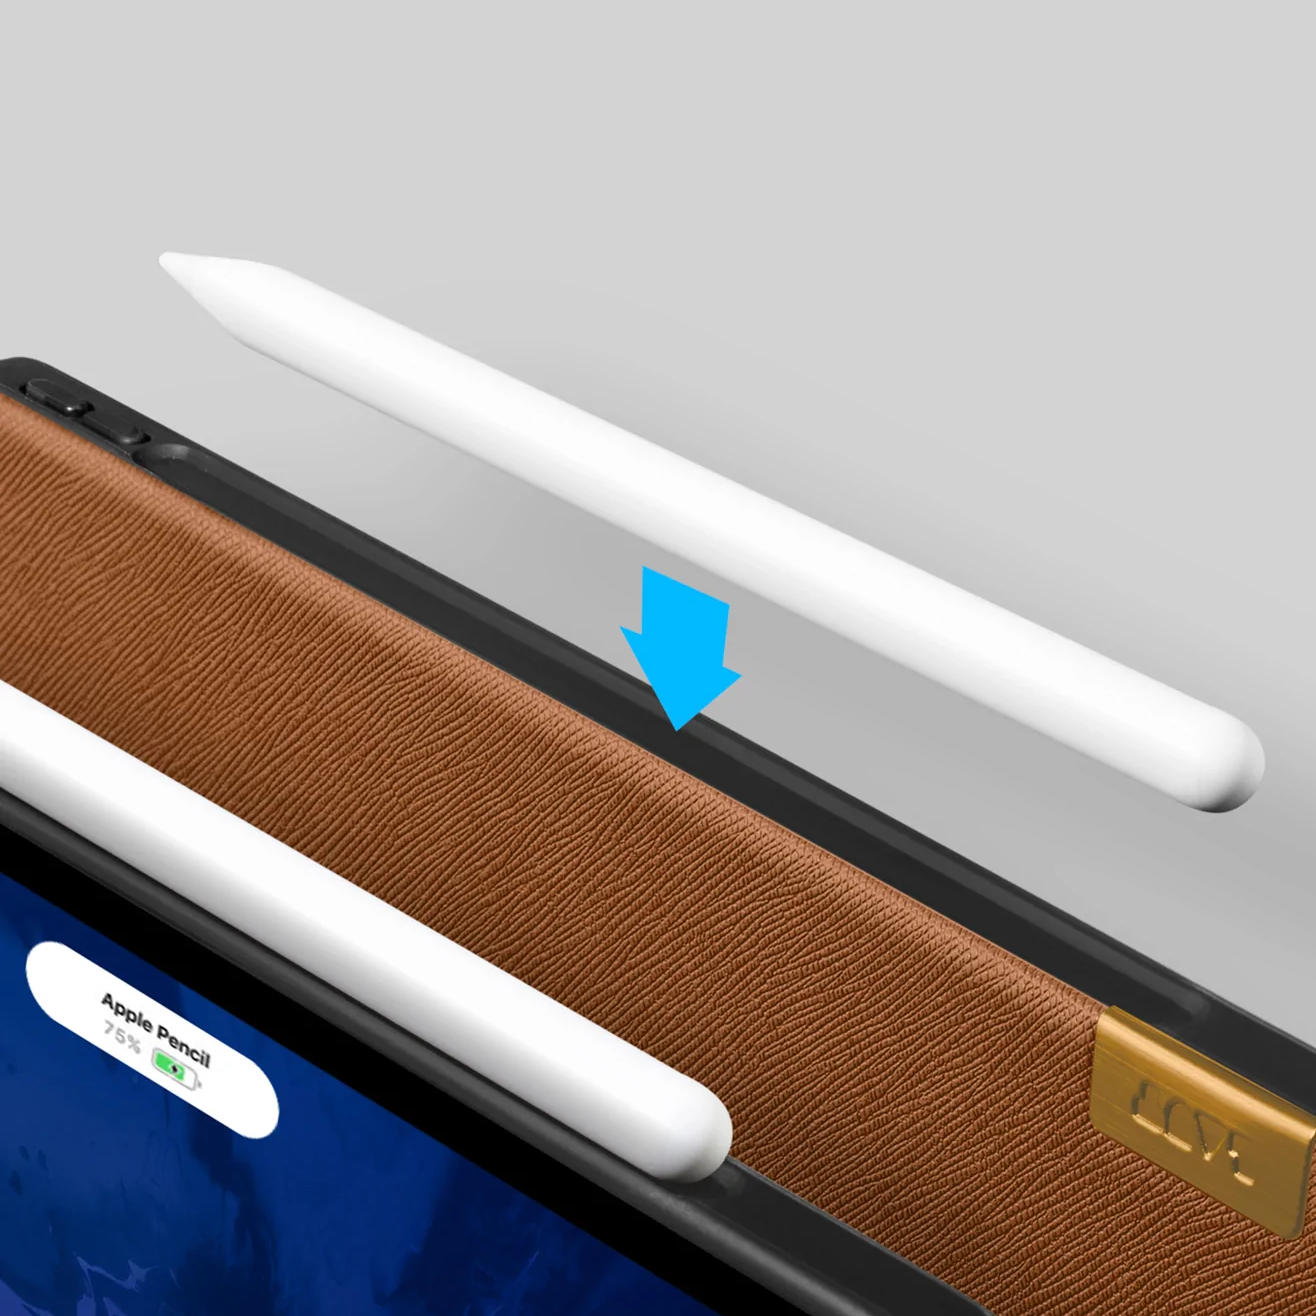 LAUT PRESTIGE Folio 軍規蜂巢 2021 iPad Pro 11吋 3代 耐衝擊保護套, 質感棕